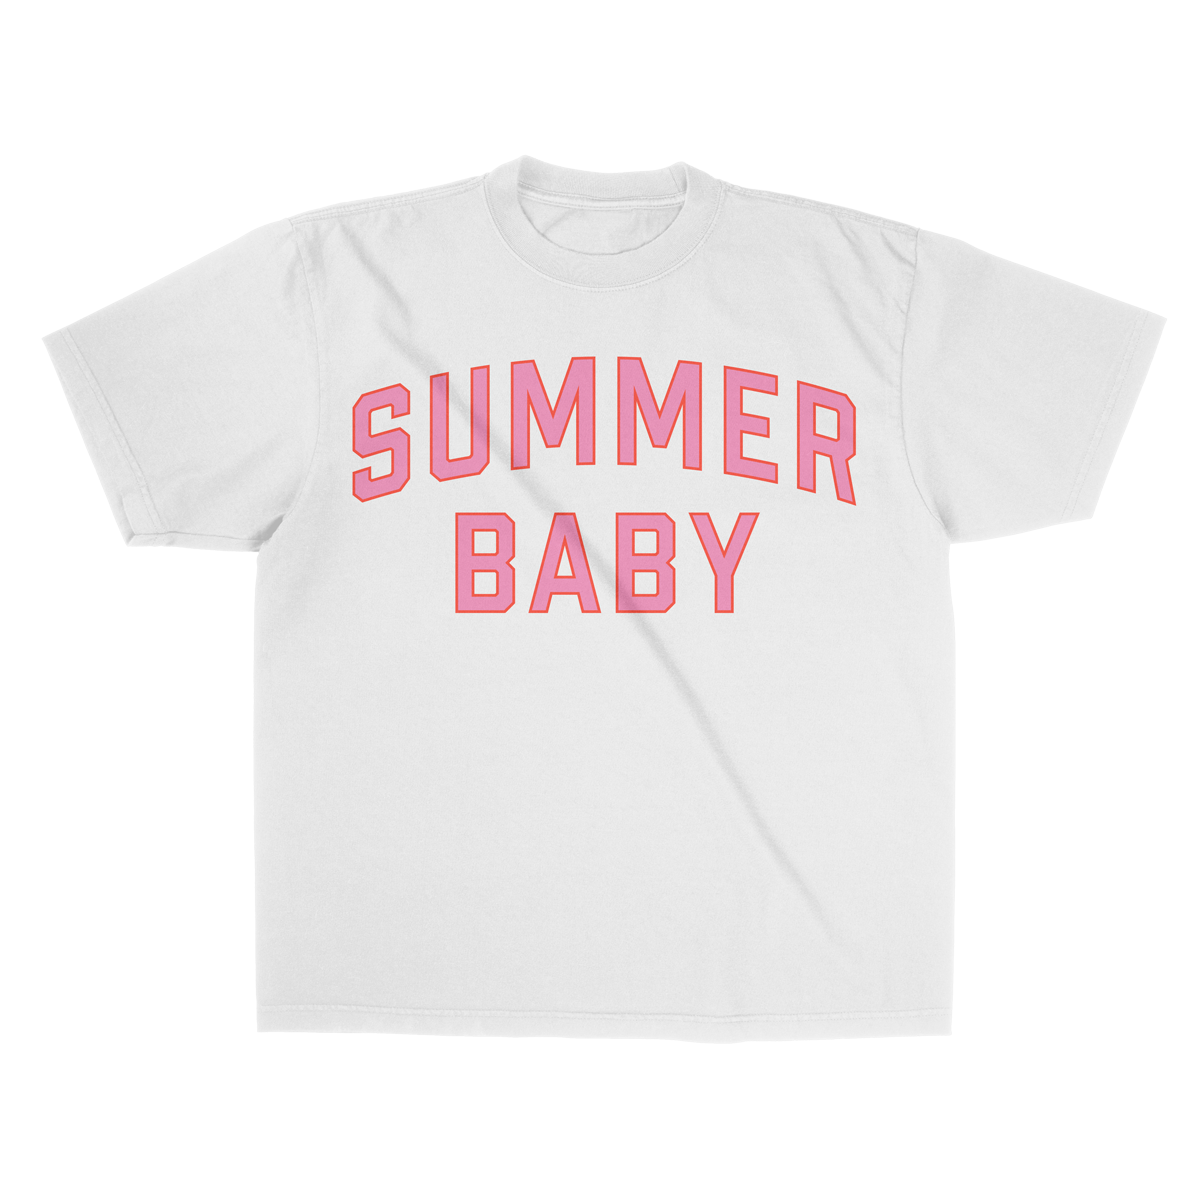 Camiseta colegial de verano para bebé - Blanco